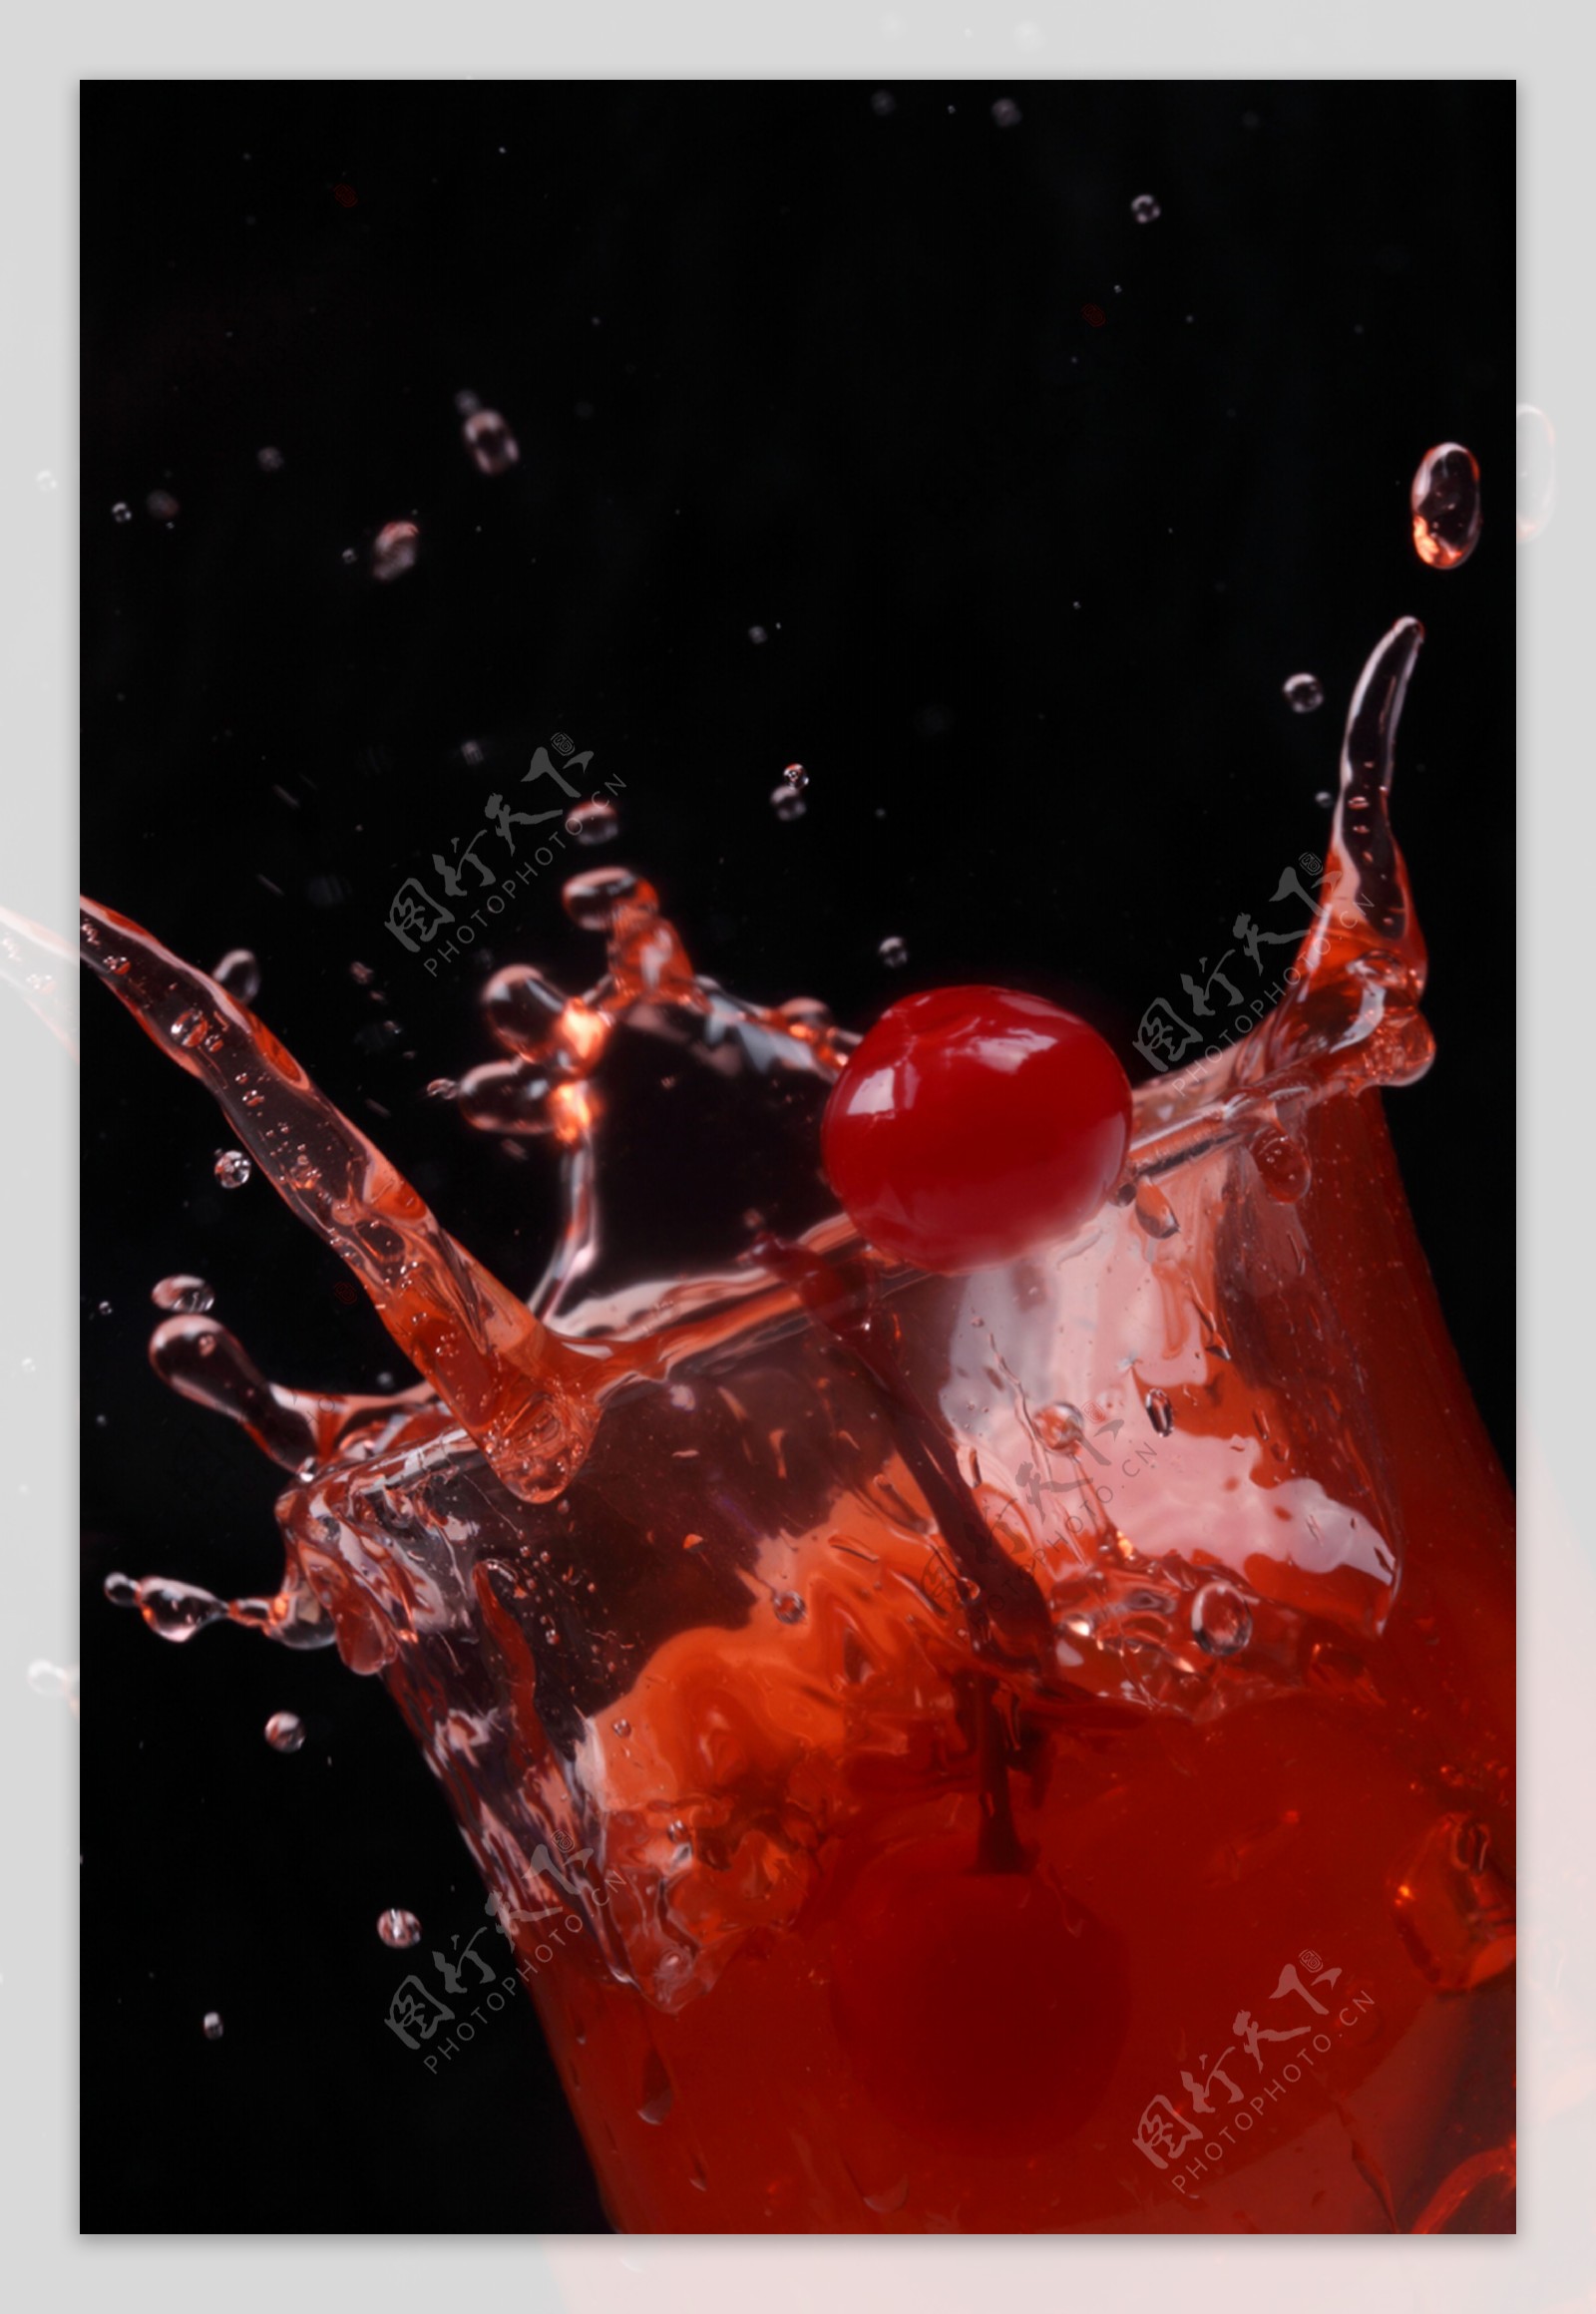 樱桃汁 库存照片. 图片 包括有 健康, 液体, 自然, 充分, 红色, 本质, 水罐, 叶子, 绿色, 有机 - 33186016